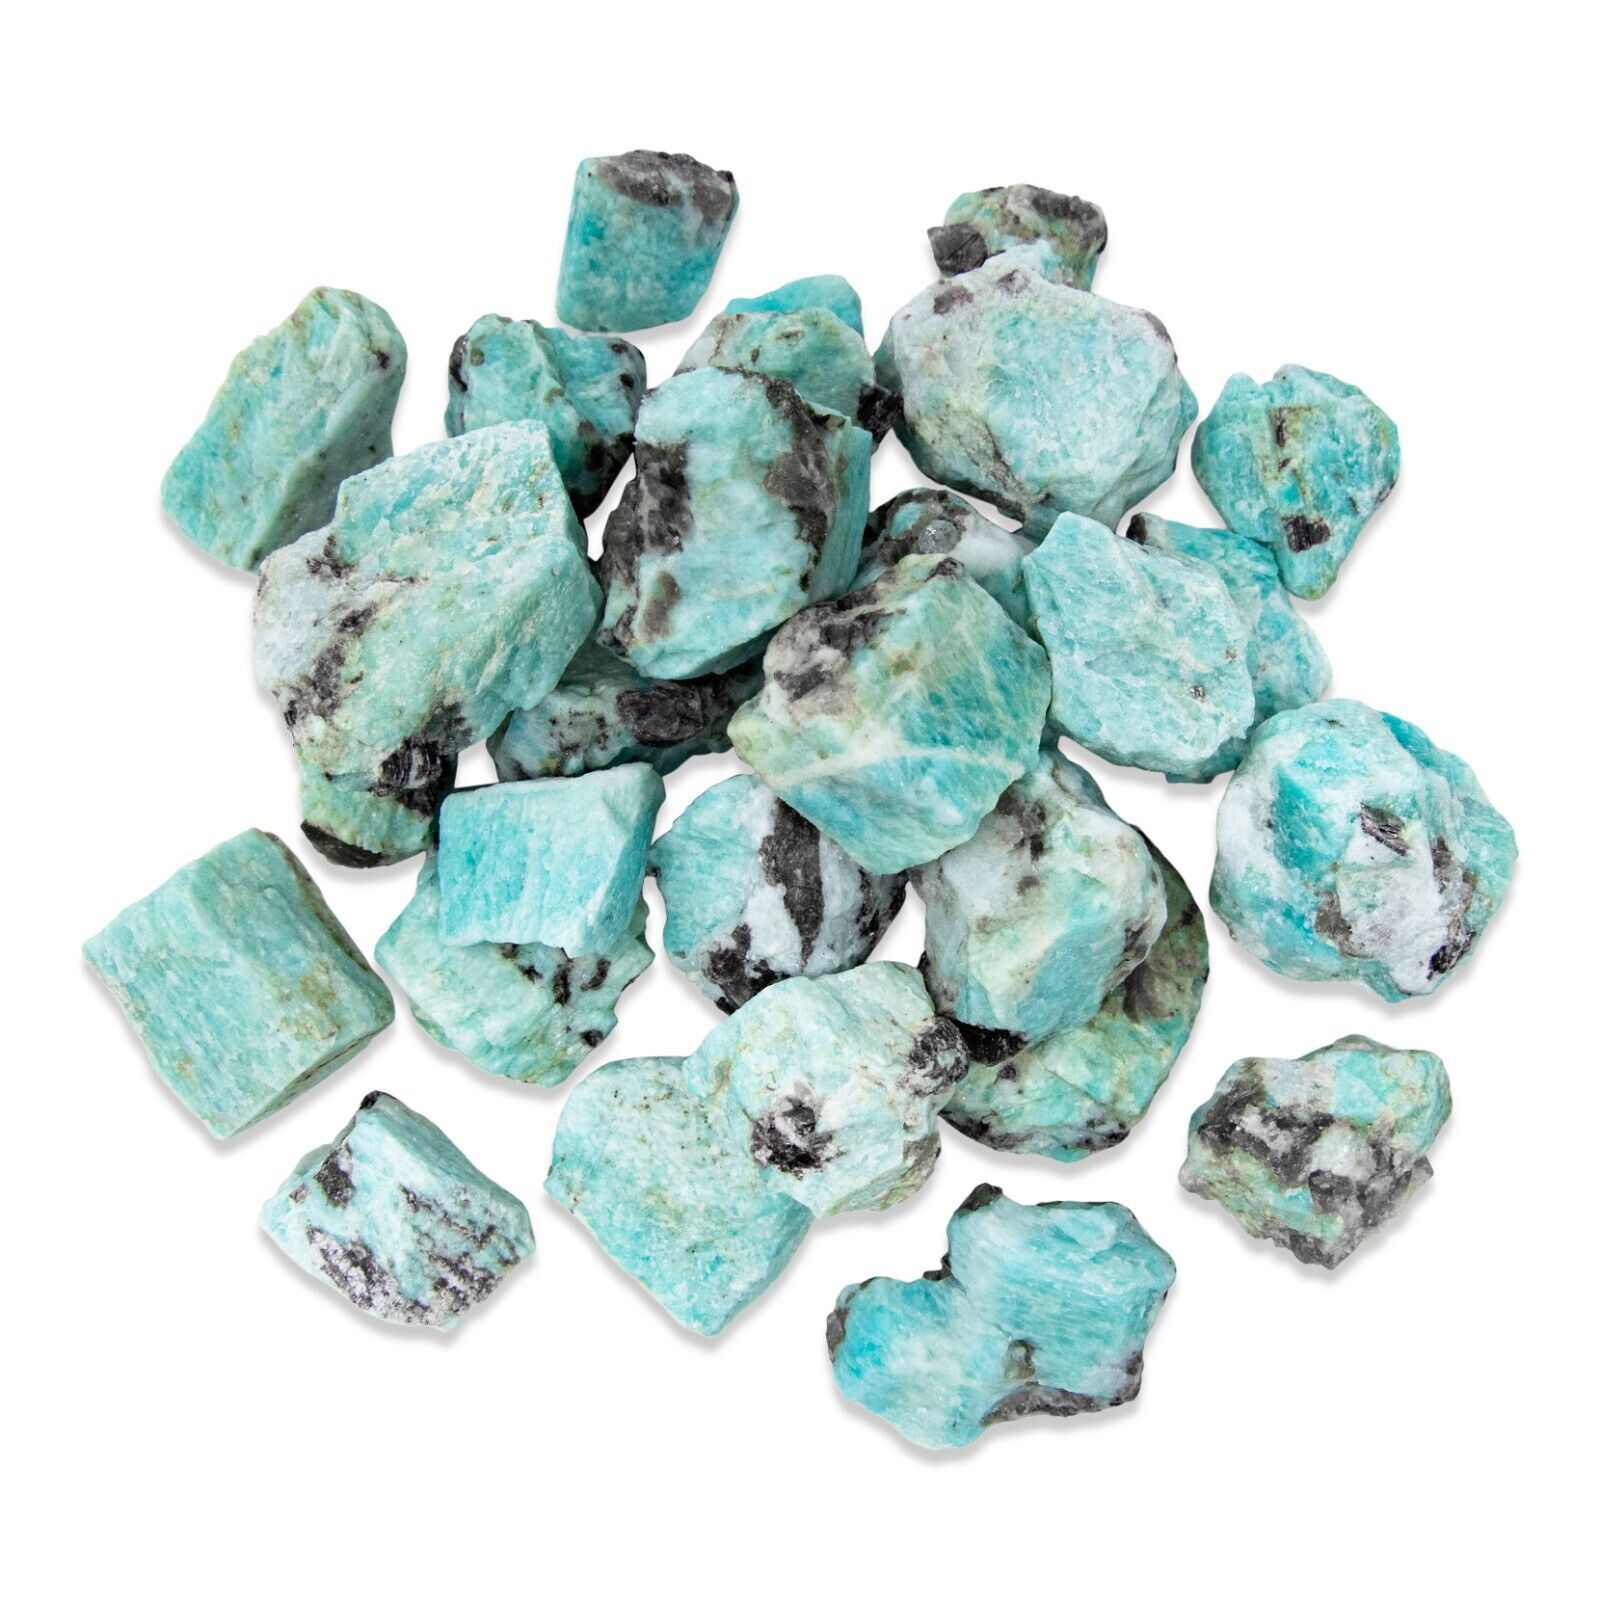 Raw Amazonite Crystal - Bulk Wholesale Rough Stones - Amazonite Gemstone Brazil